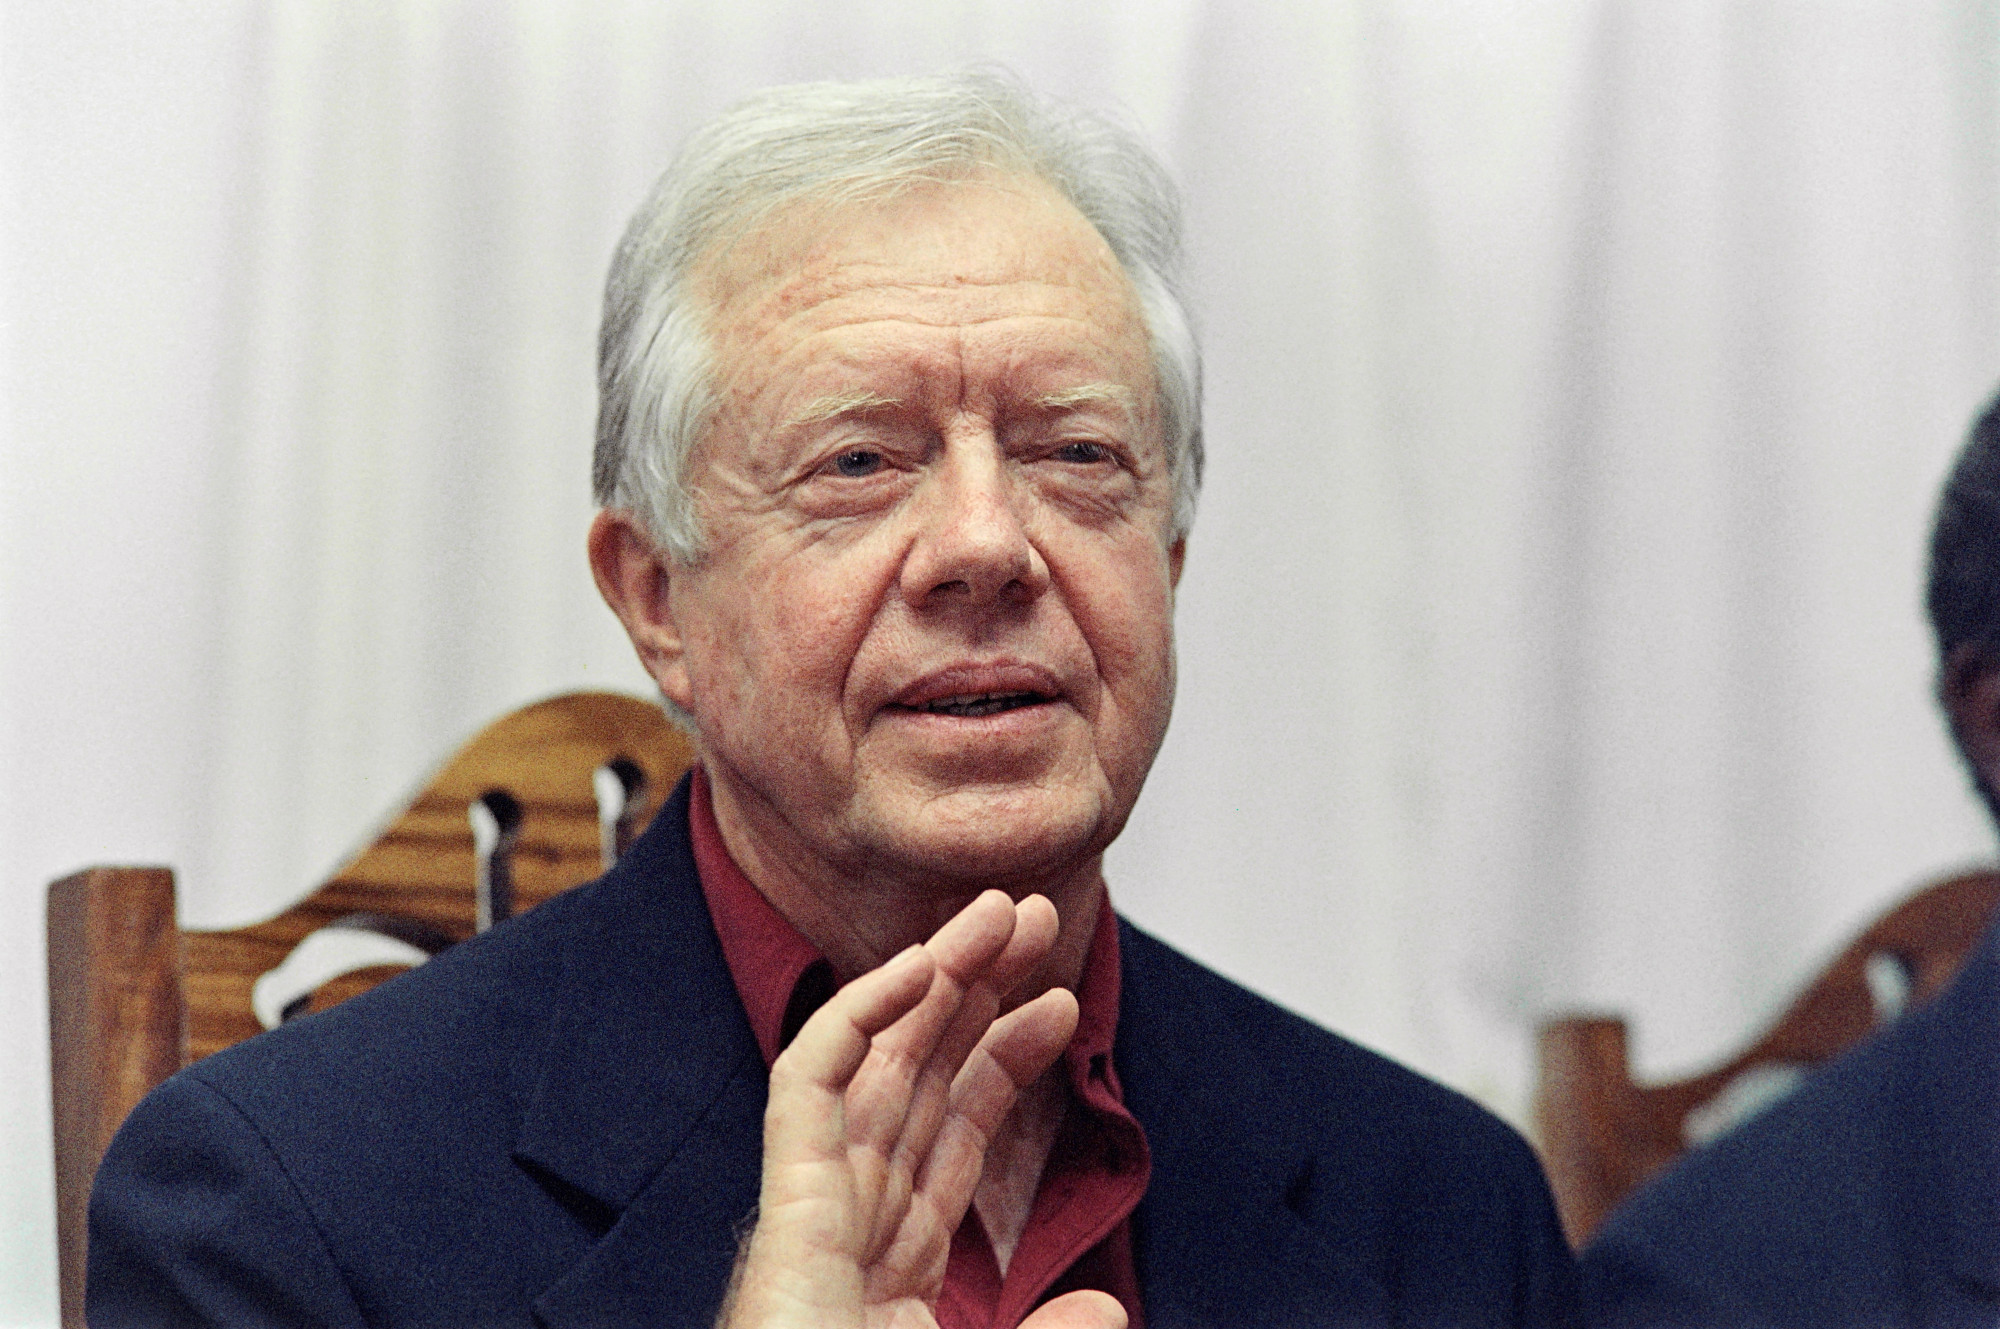 Jimmy Cartert odahaza, hospice-ellátásban ápolják tovább